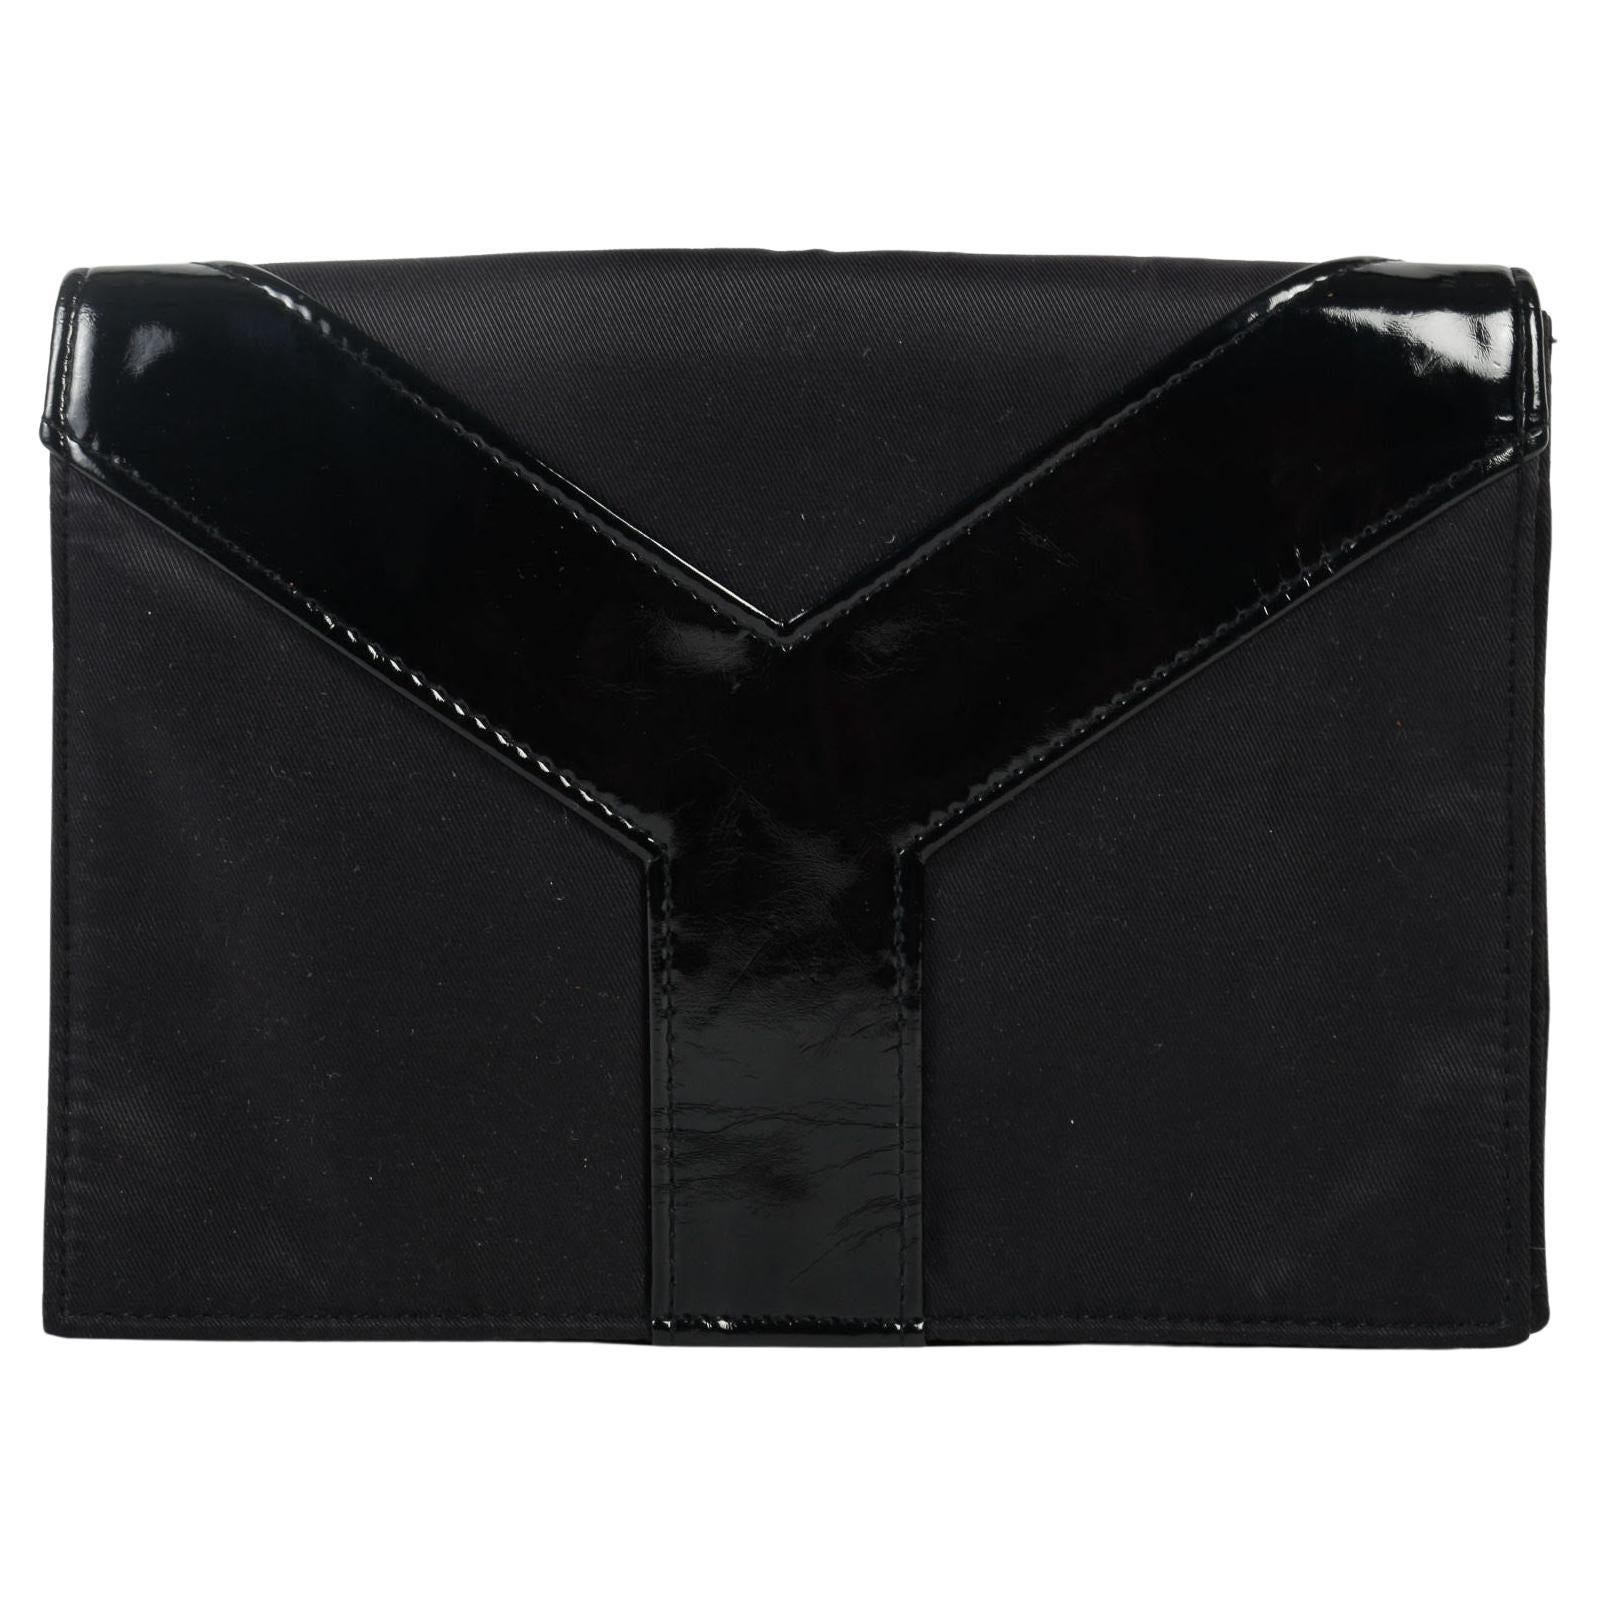 Vintage Yves Saint-Laurent Clutch Bag, Black Leather, 20th Century.